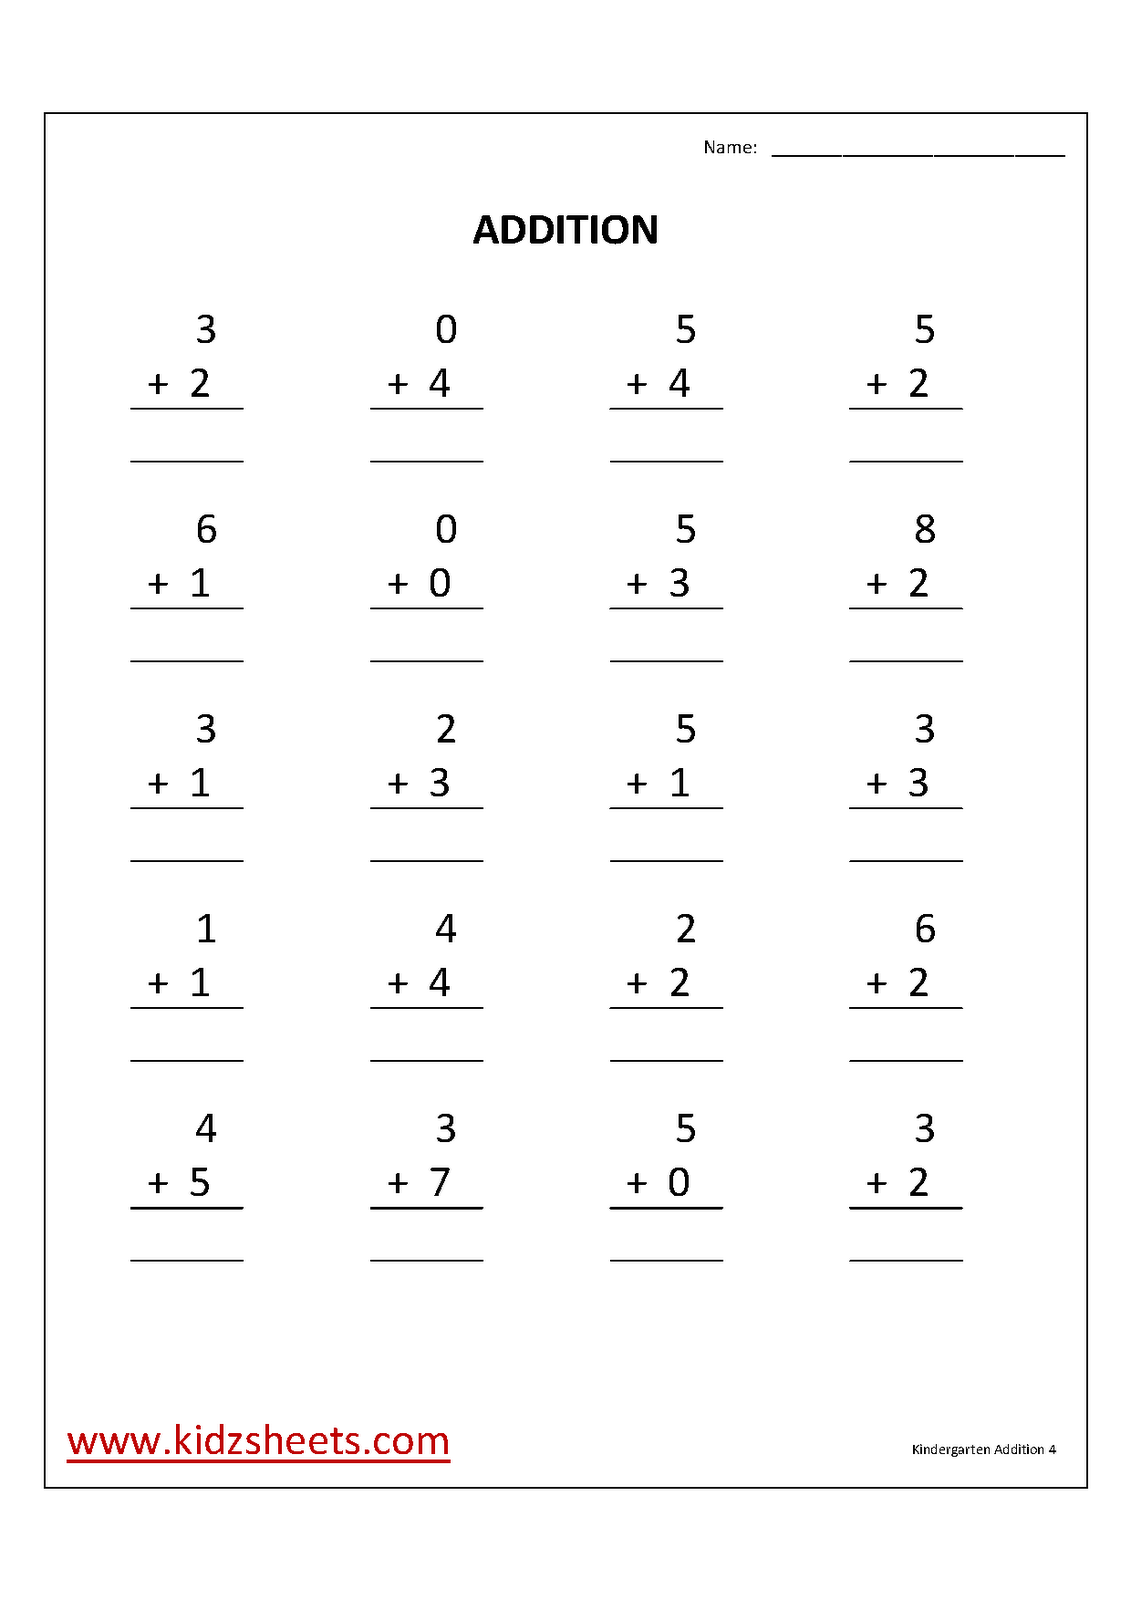 Free Printable Kindergarten Math Addition Worksheets Image